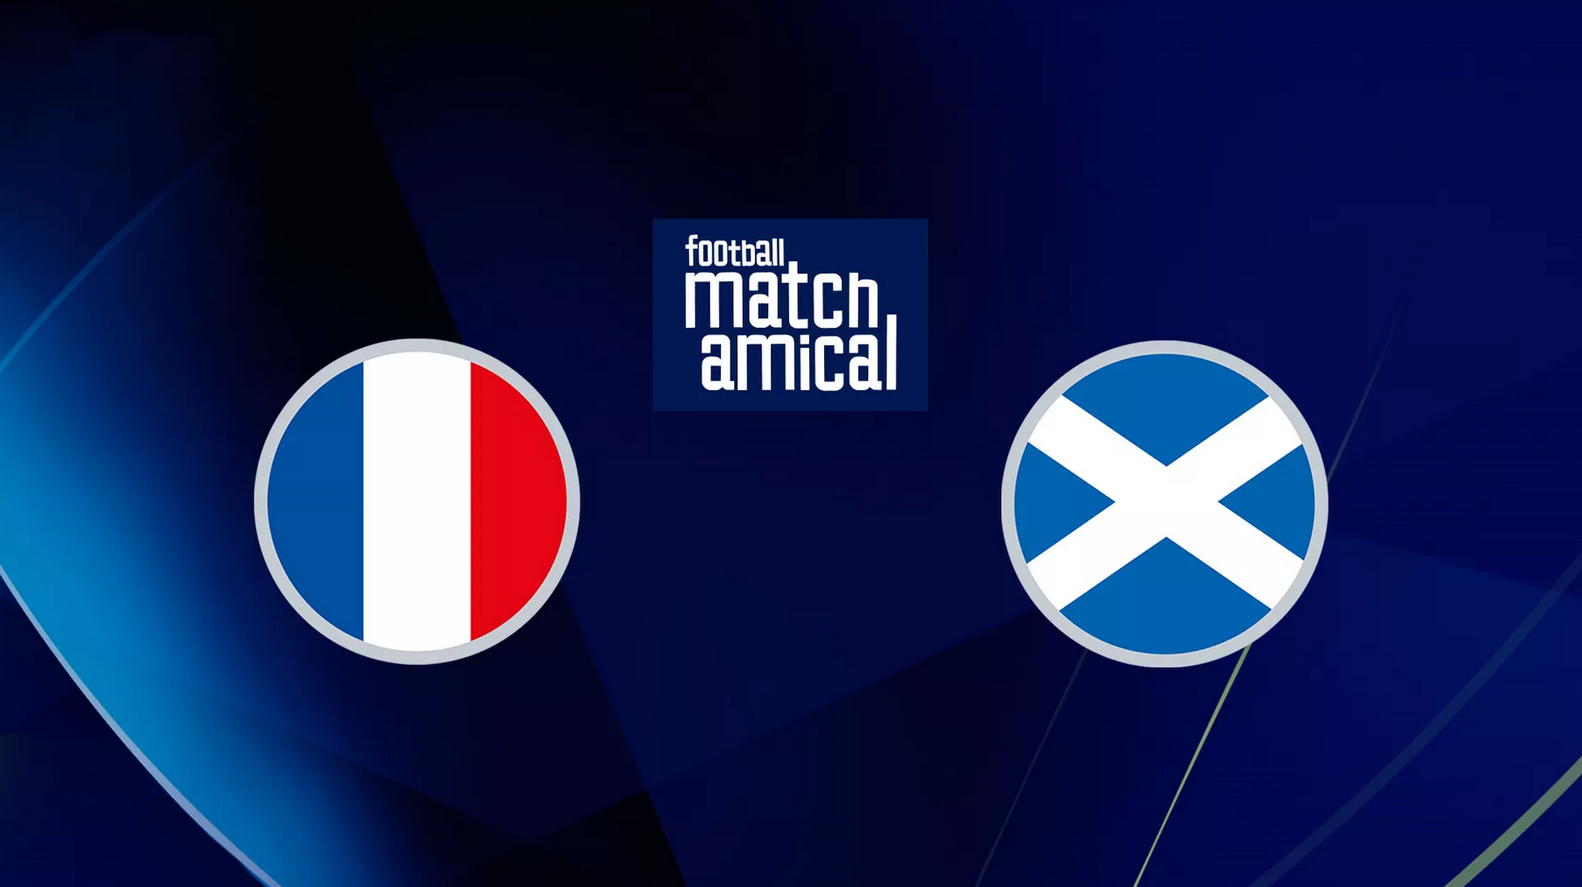 France / Ecosse (TV/Streaming) Sur quelle chaine et à quelle heure suivre le match amical ?